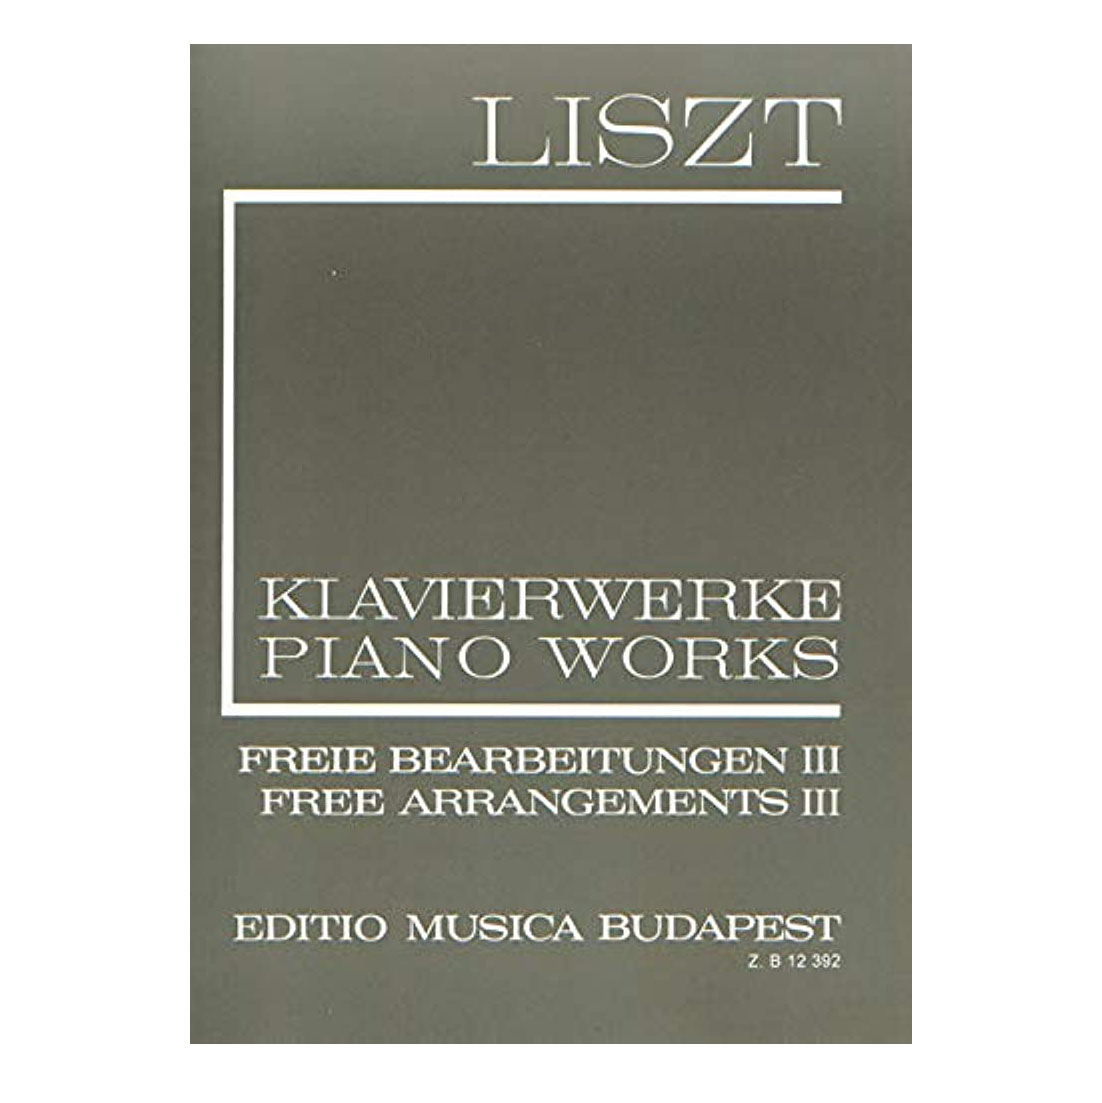 Liszt - Piano Works Free Arrangements  III II/3